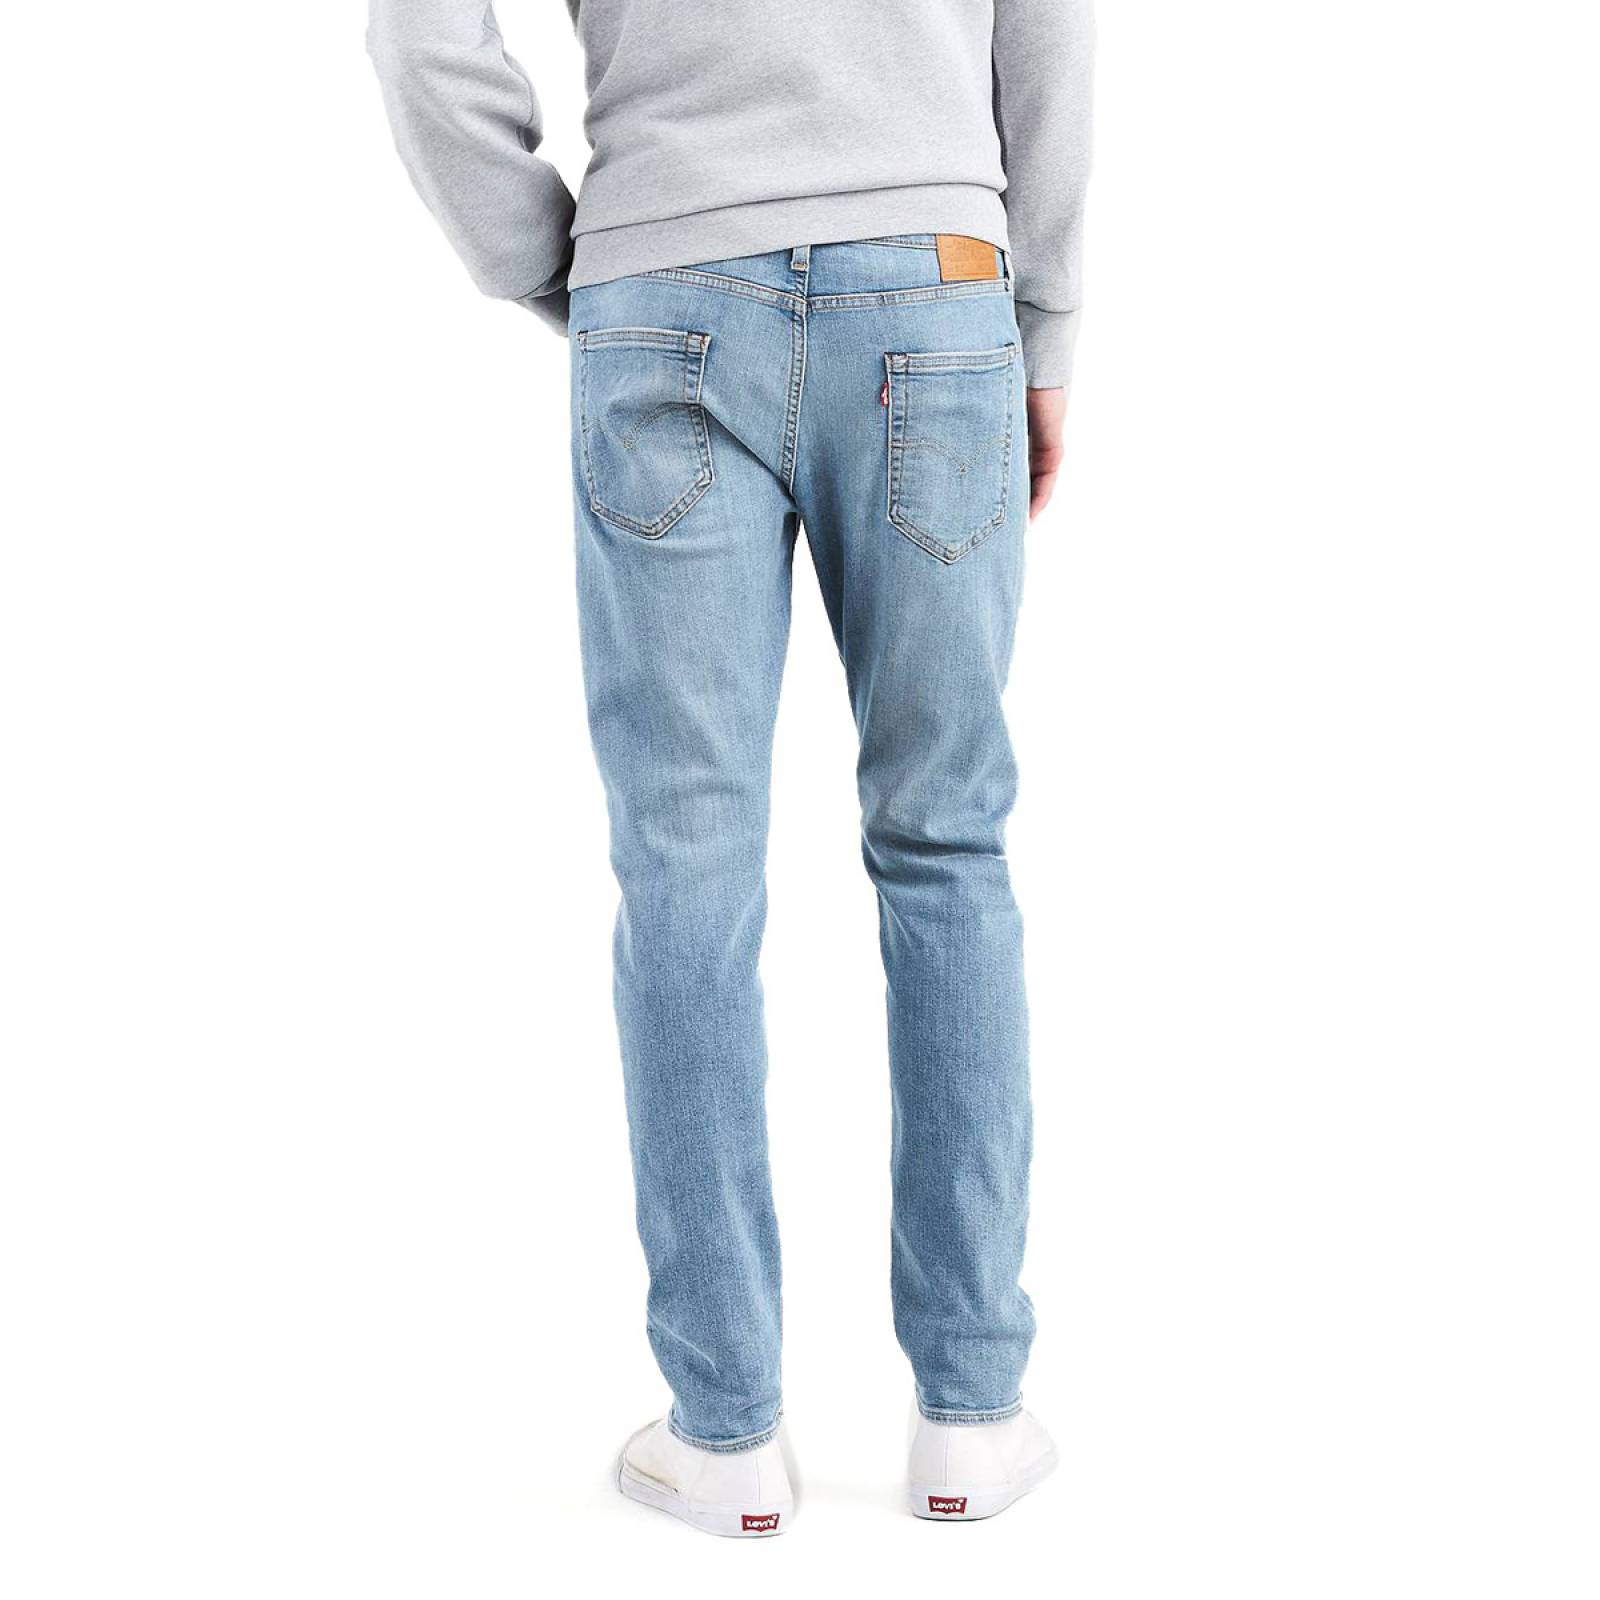 Jeans 512 Levis Slim Taper Fit para Caballero